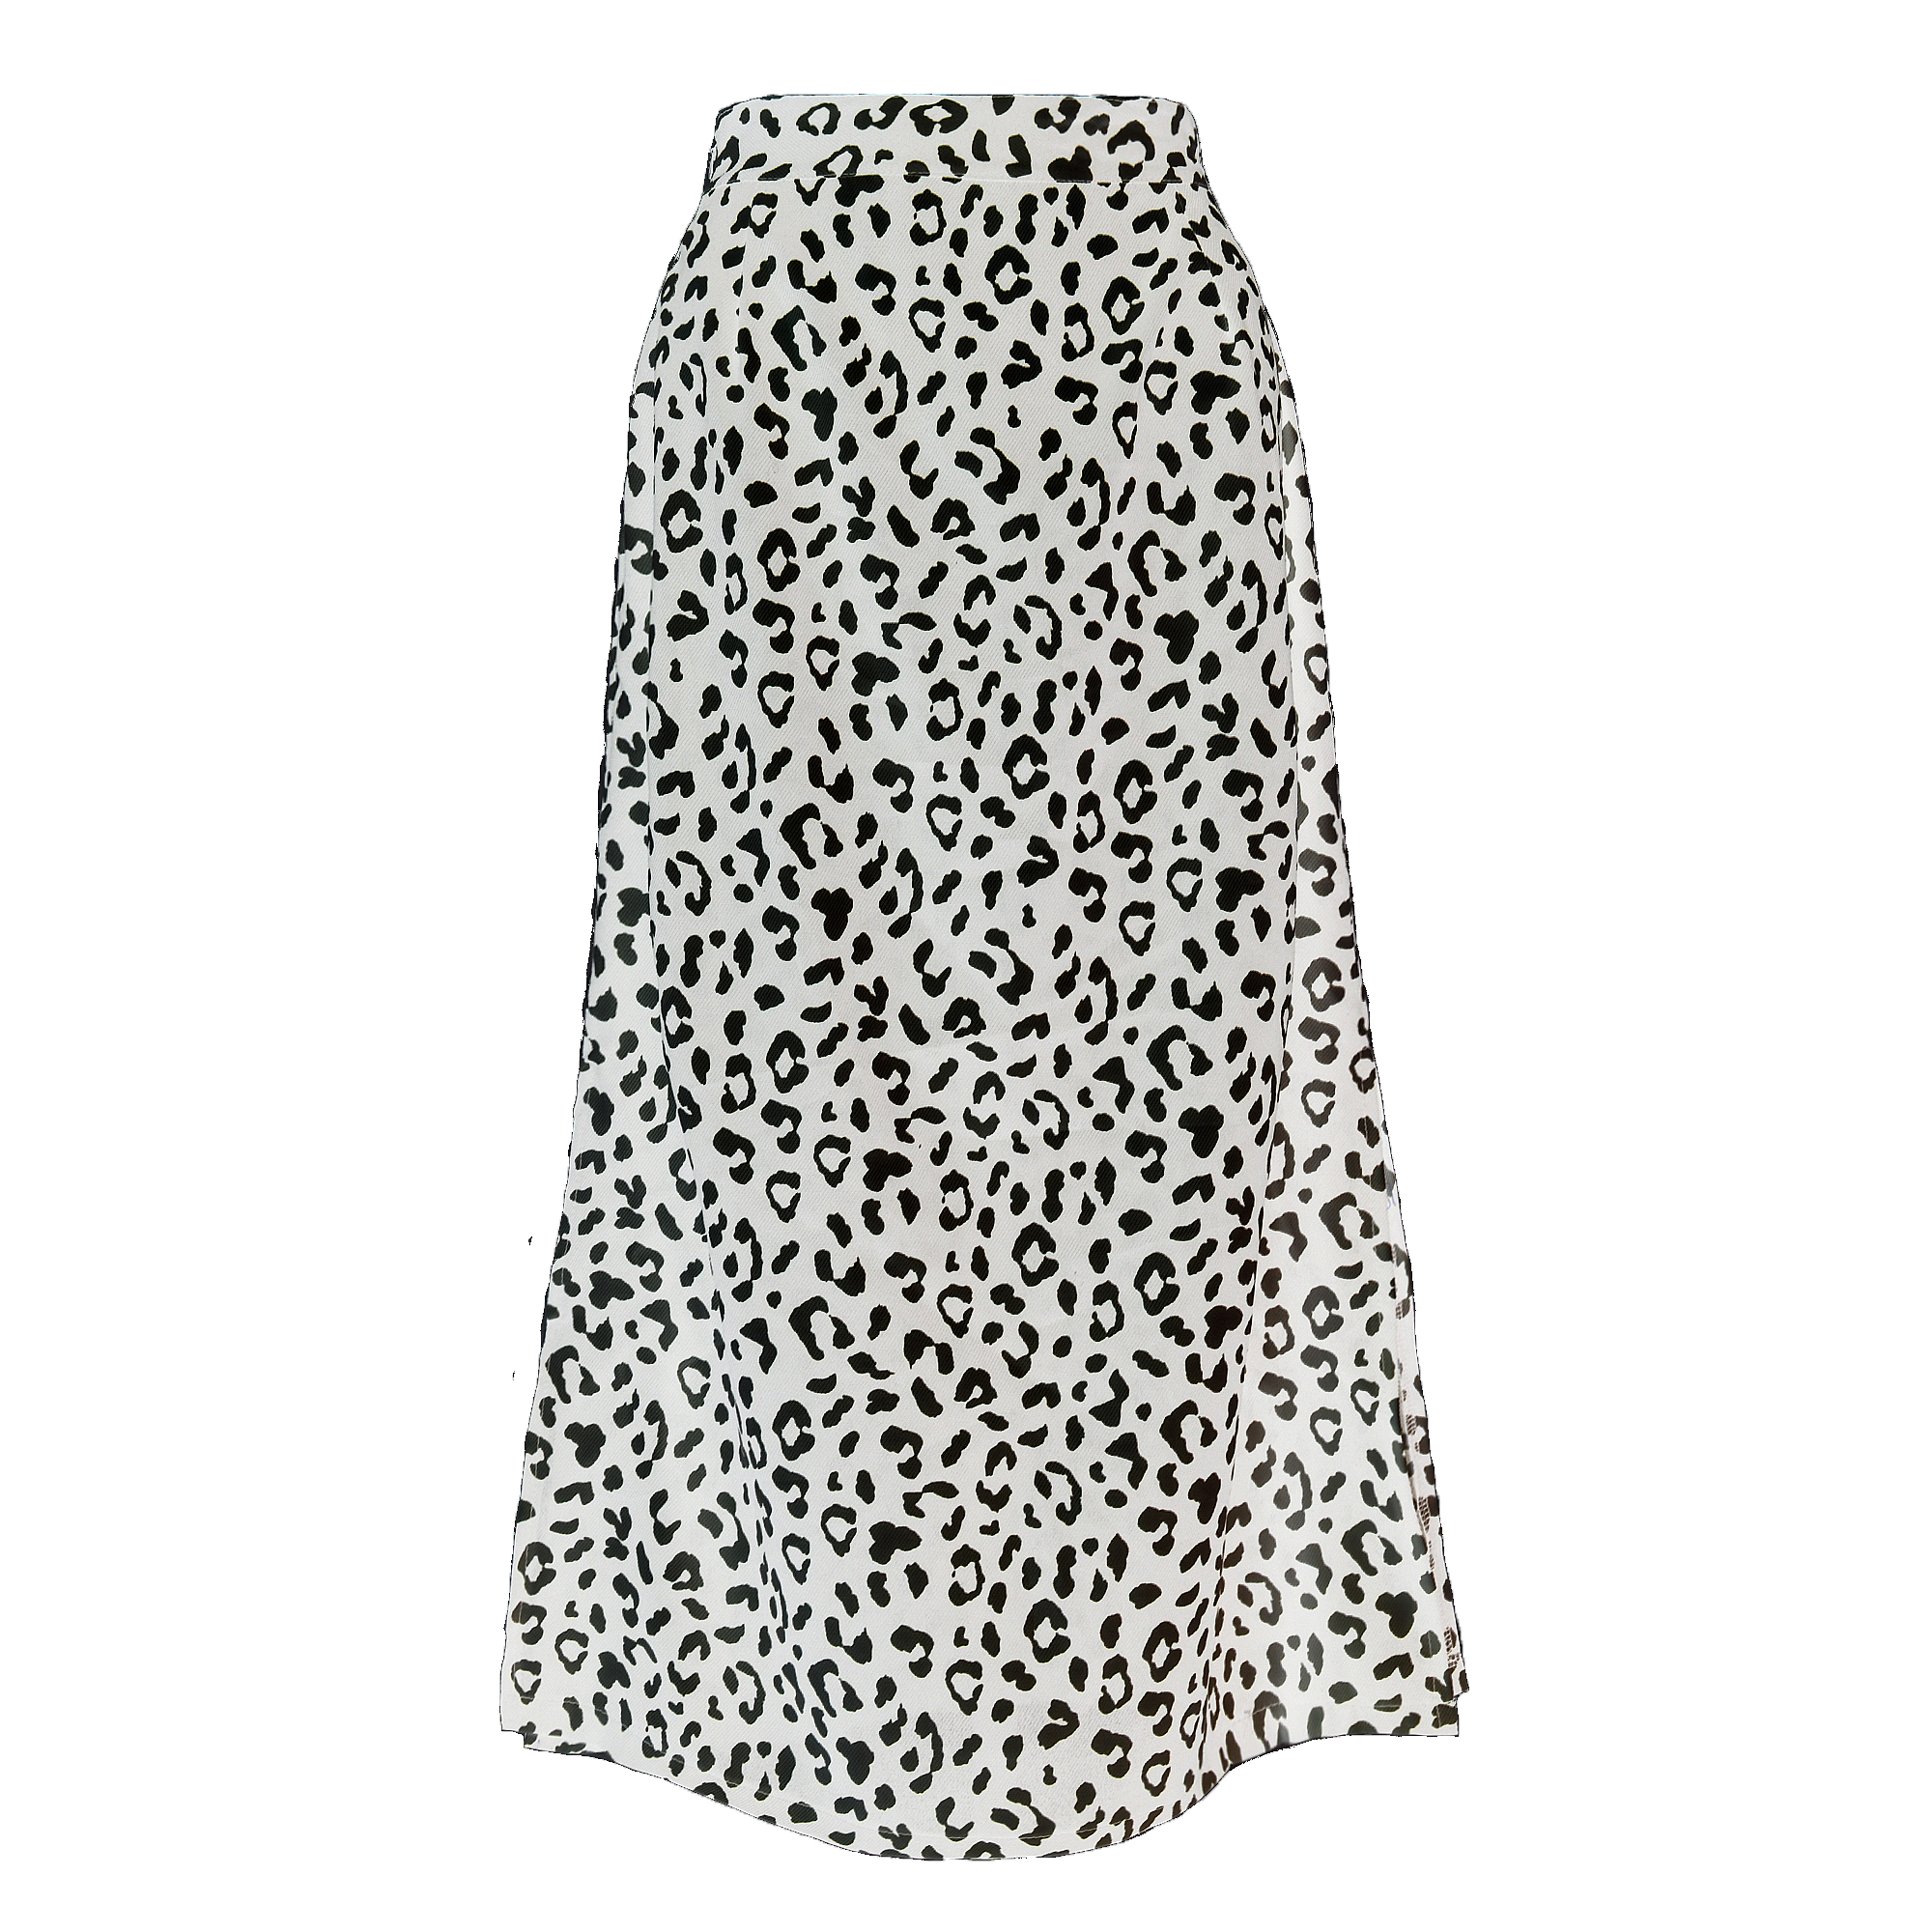 Leopard Dot Print Yepamusoro Fashoni Elastic Waist Maxi Evakadzi Skirts